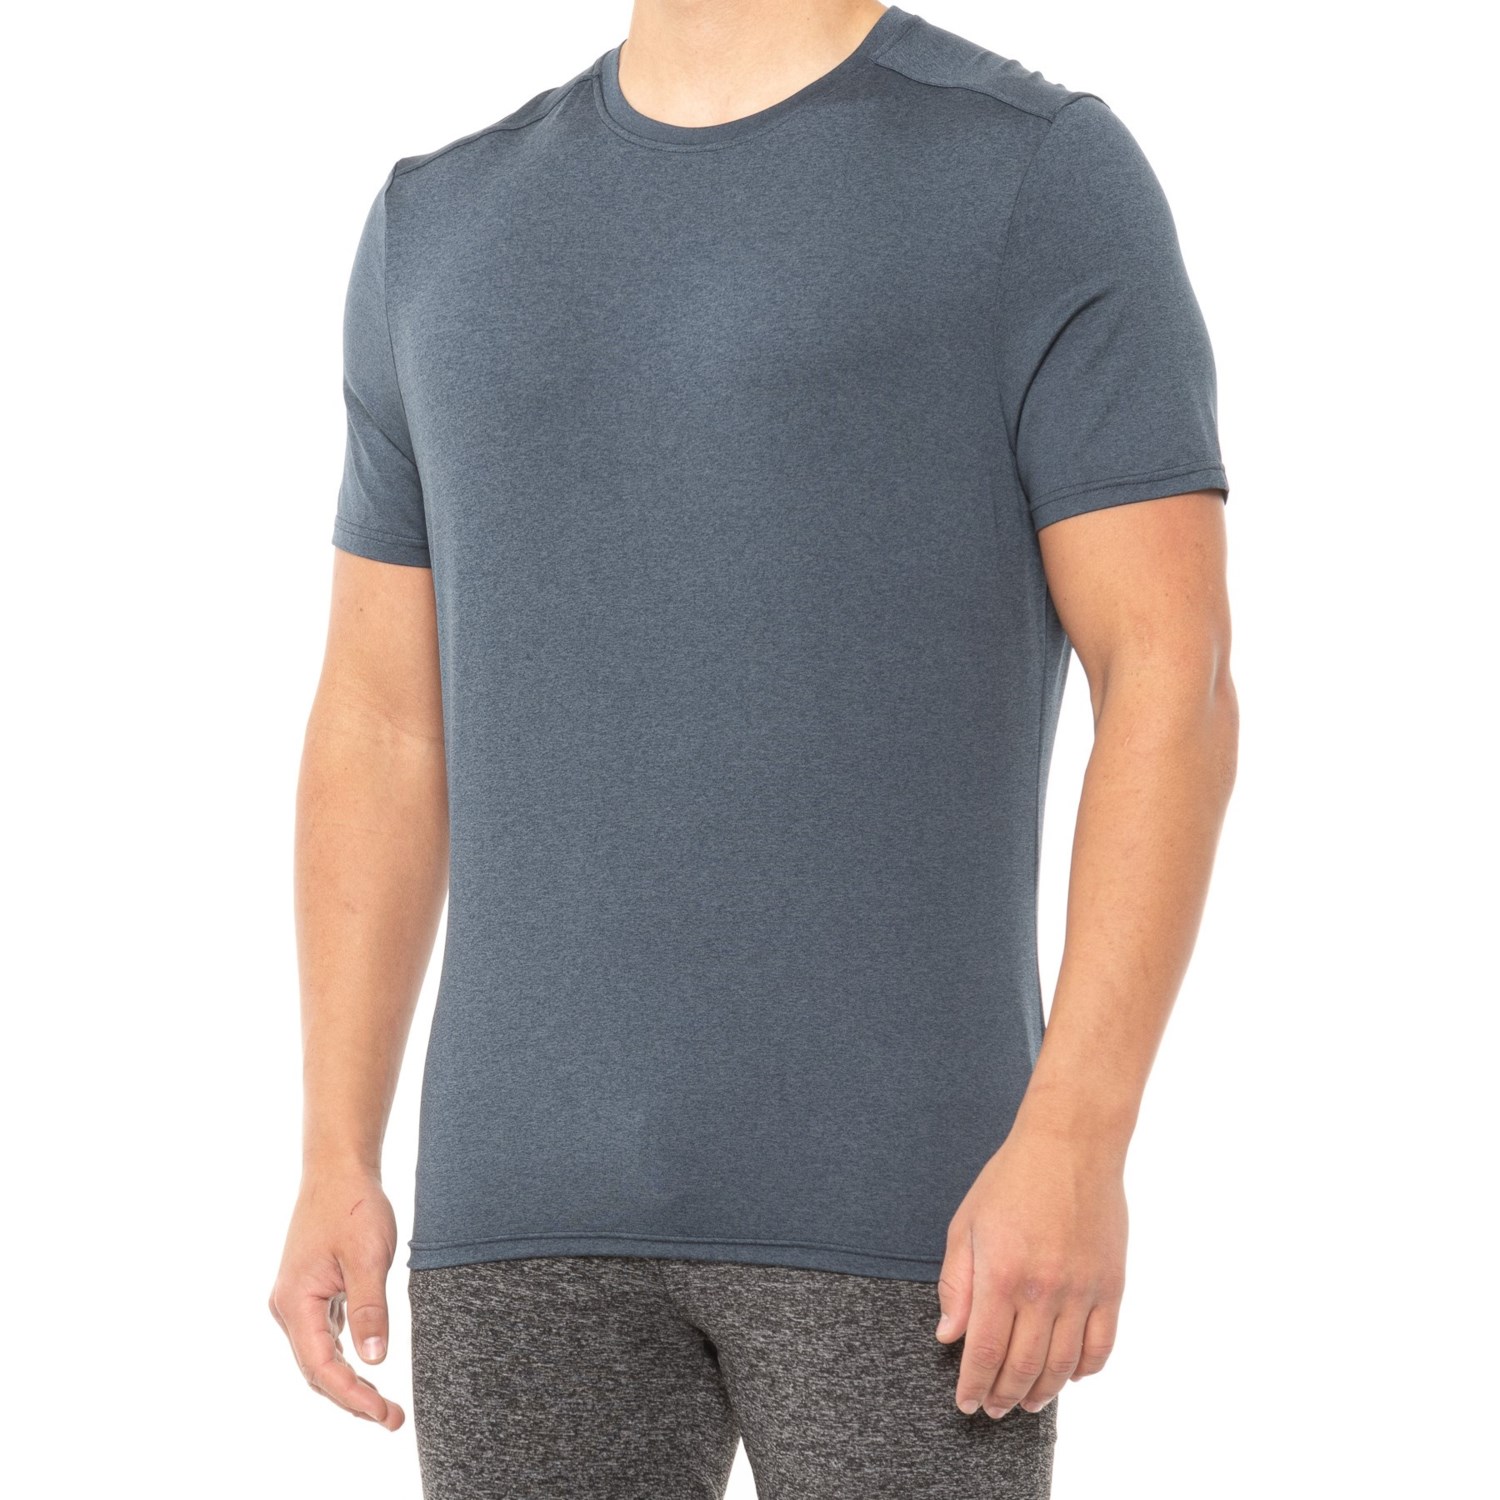 Kyodan Cool Hand Moss Jersey T-Shirt (For Men) - Save 57%